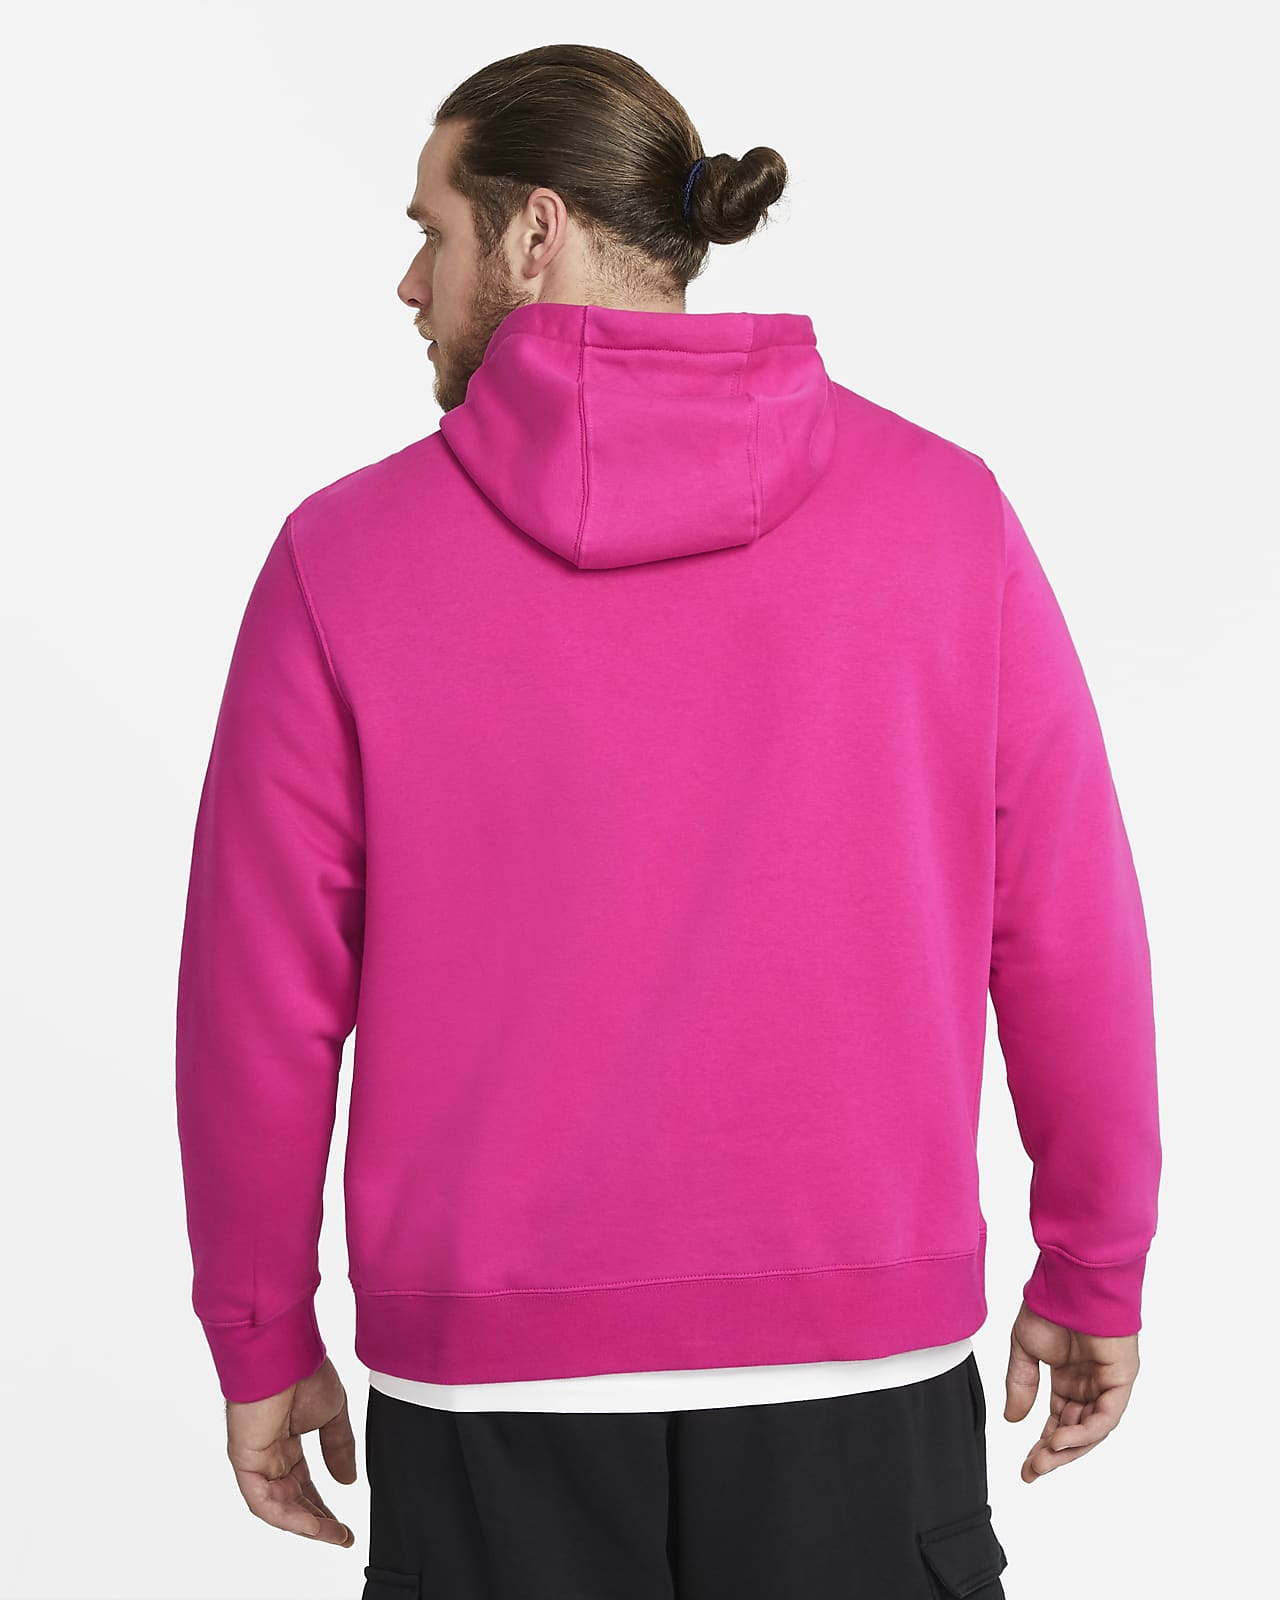 nike nfl pullover fleece club hoodie